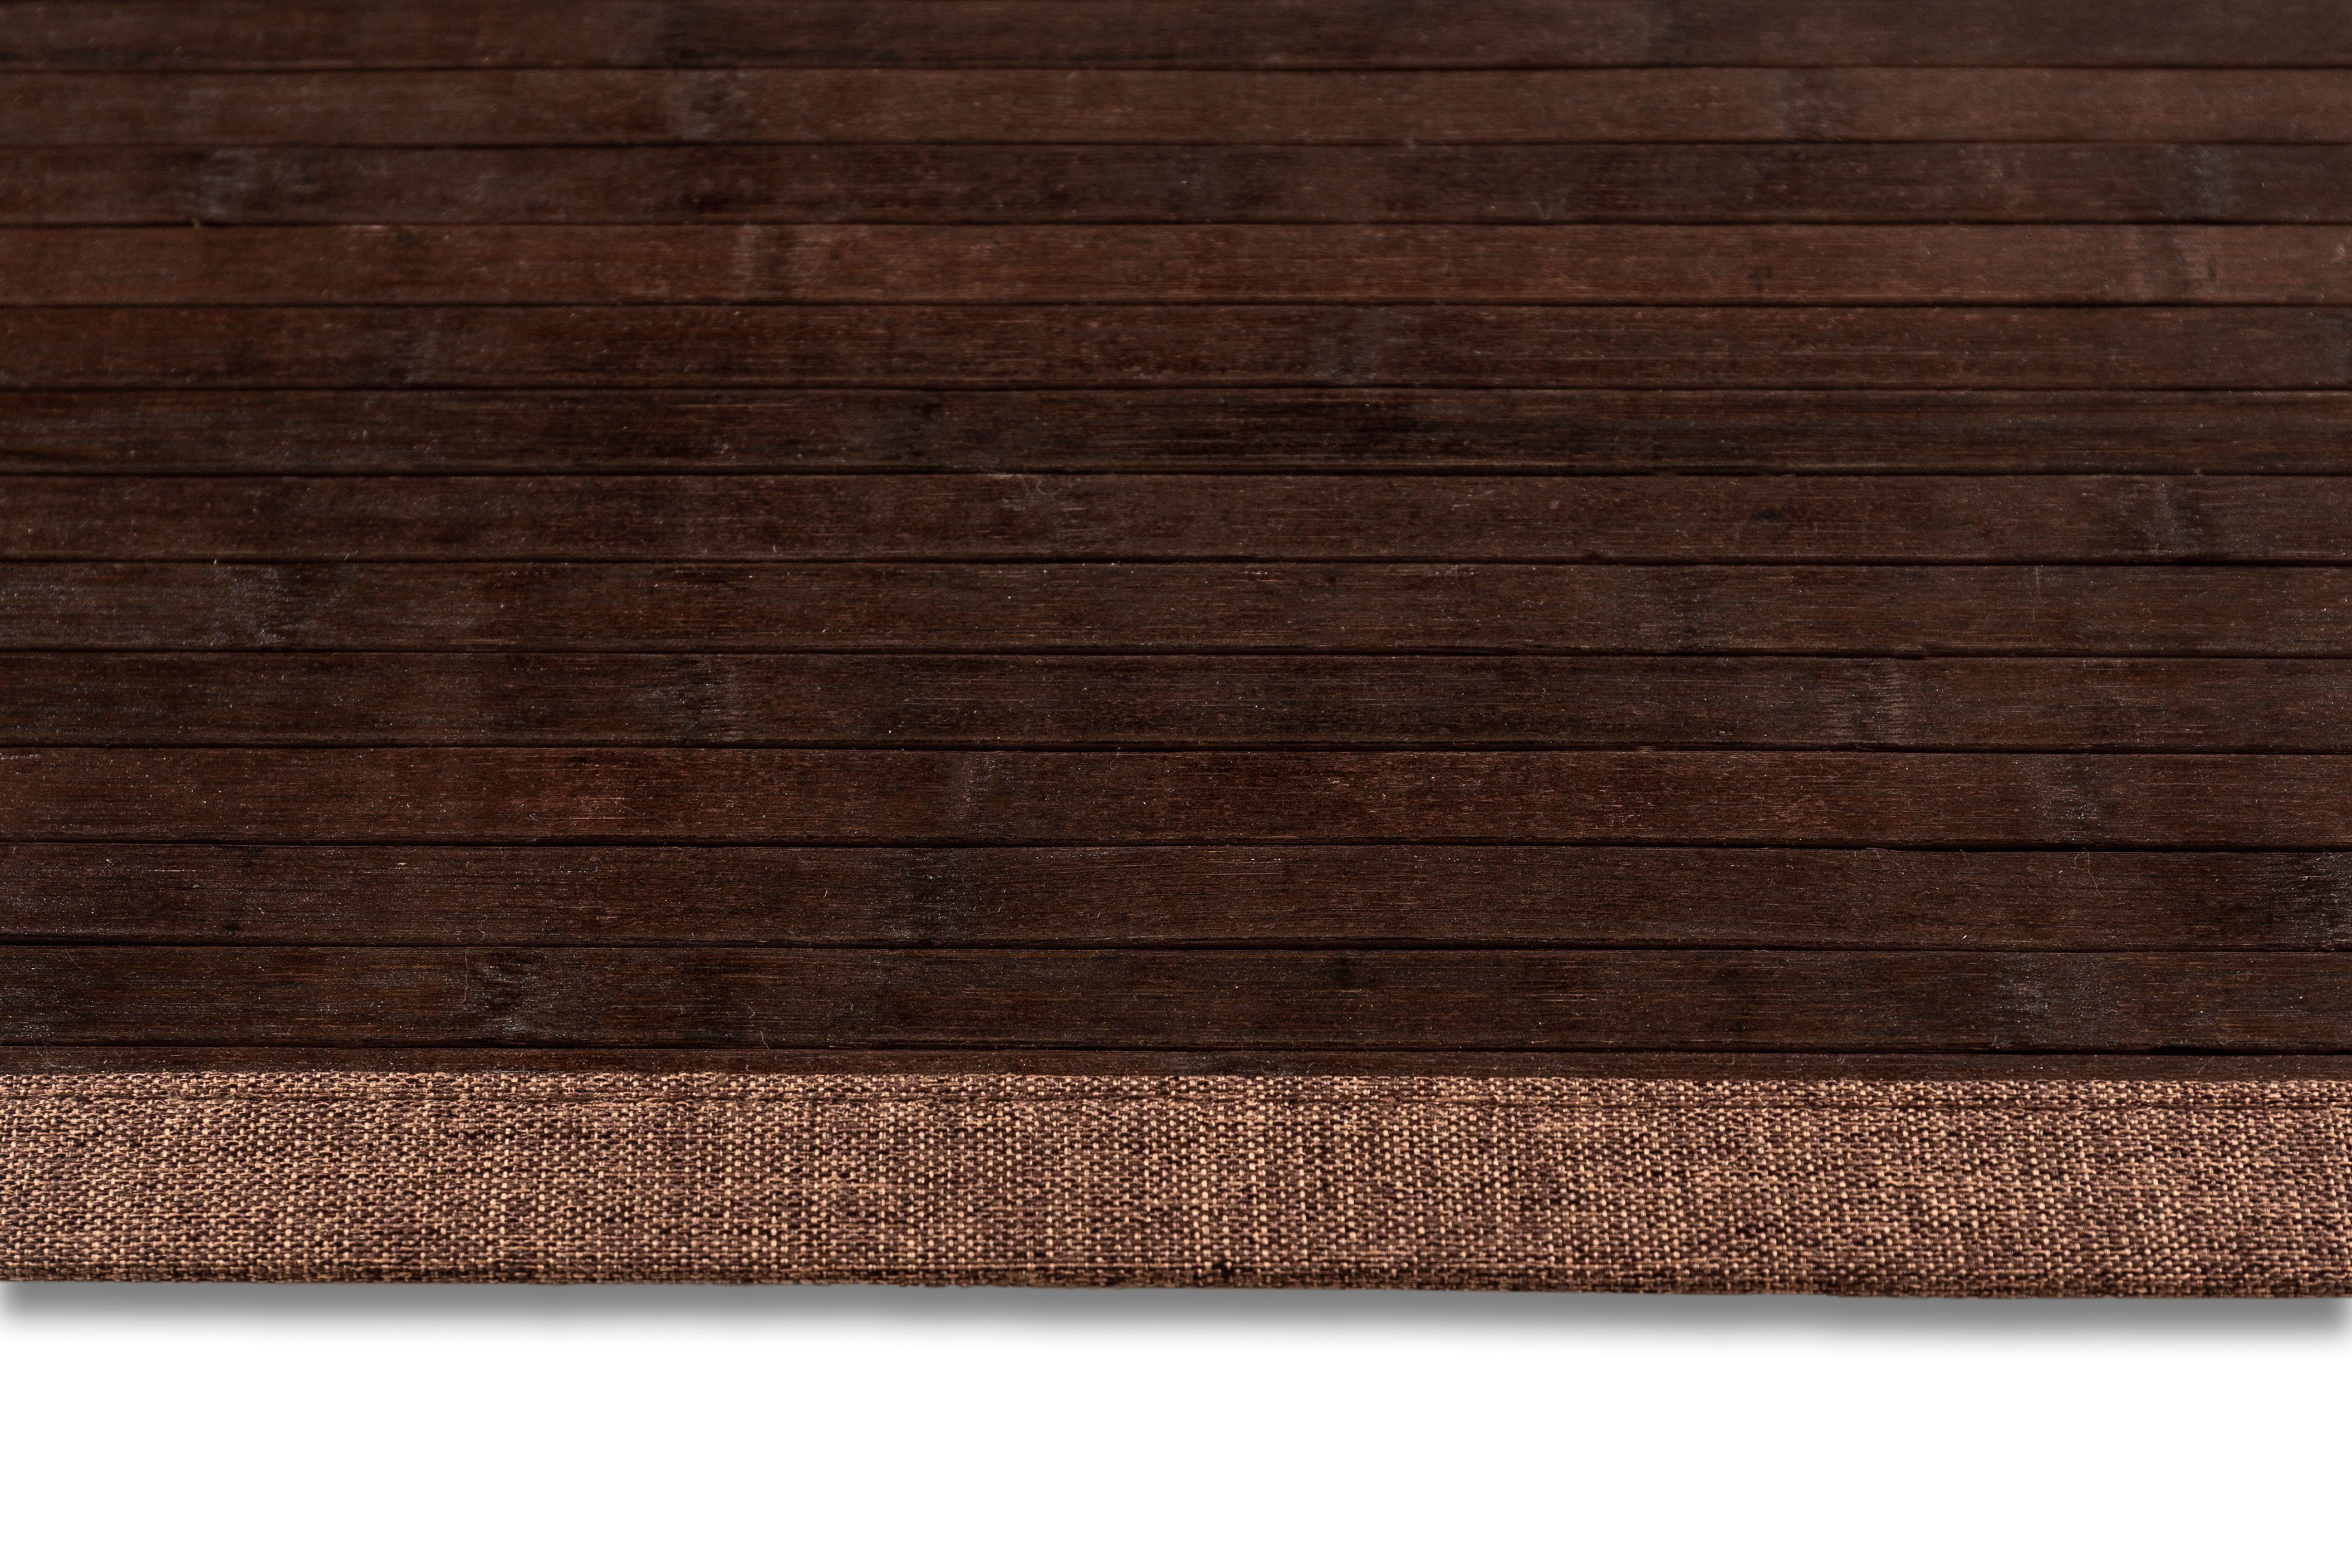 Teppich Bambus, Andiamo, rechteckig, Höhe: geeignet Material: 17 braun mm, Bambus, 100% In- Outdoor und Wendeteppich